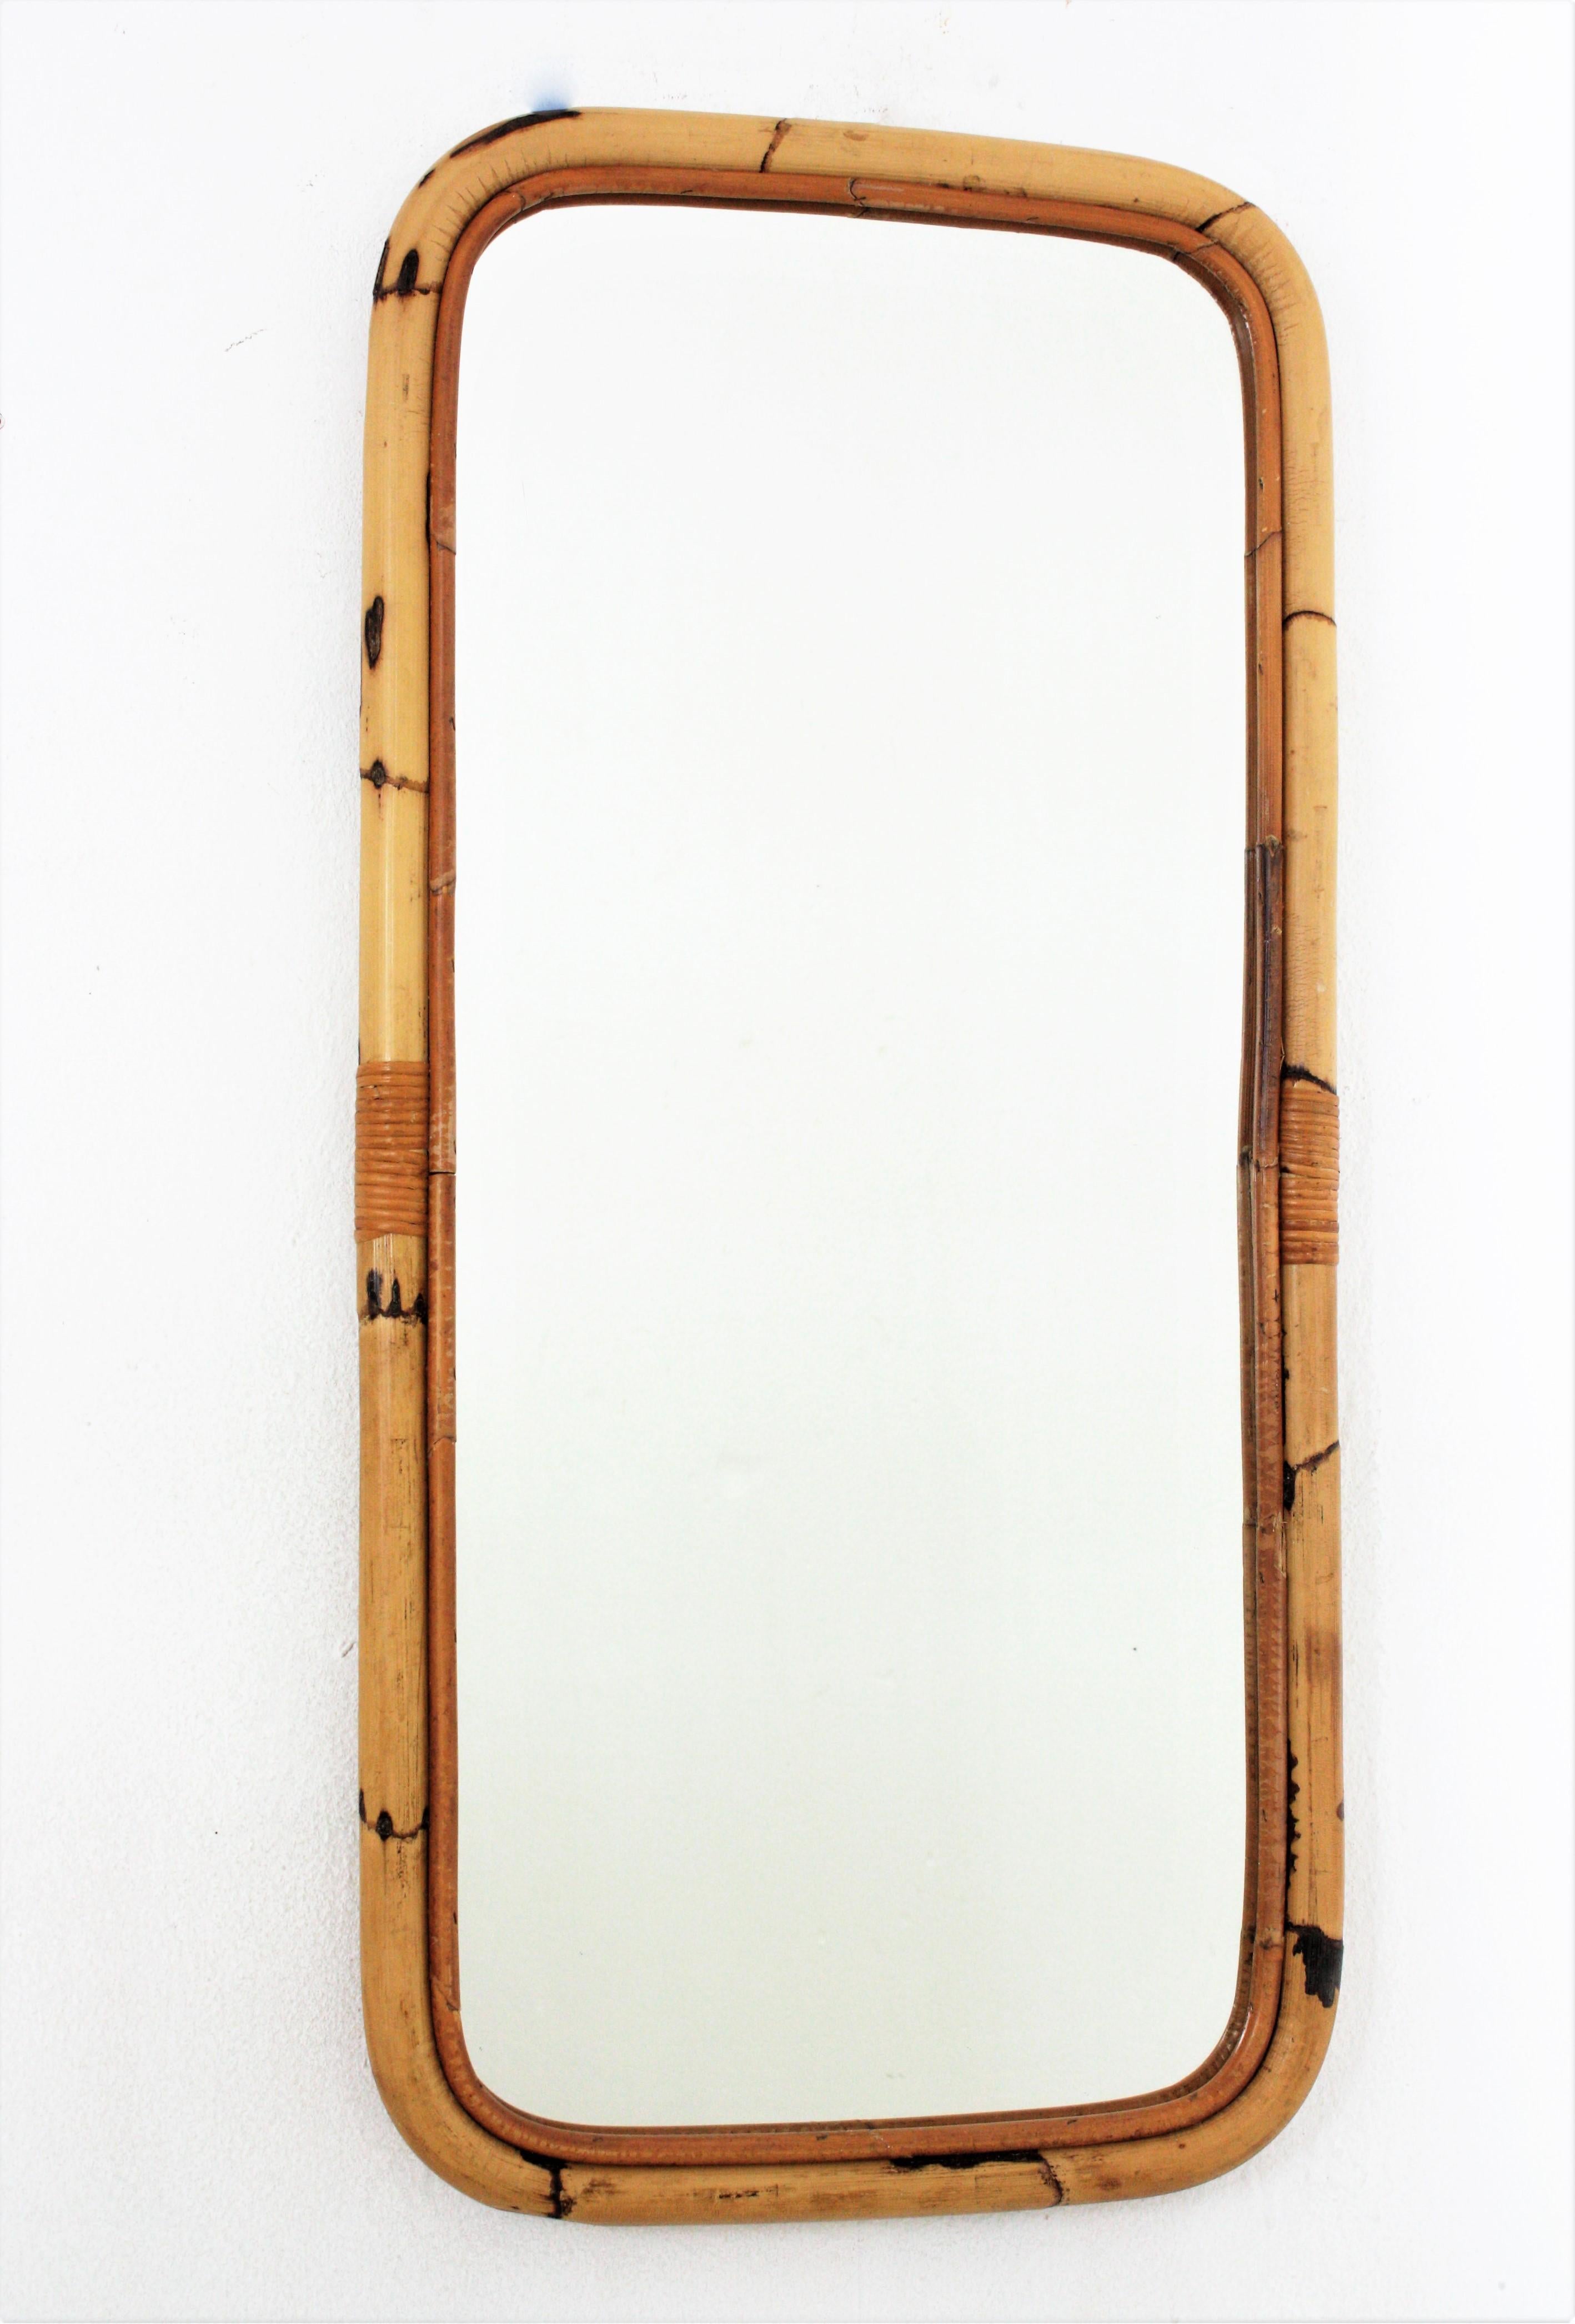 Miroir rectangulaire, bambou, rotin
Miroir rectangulaire attrayant fabriqué à la main en canne de bambou. Espagne, années 1960.
Cadre rectangulaire en bambou avec coins arrondis. 
Ce miroir est en excellent état vintage.
Il s'agit d'une belle